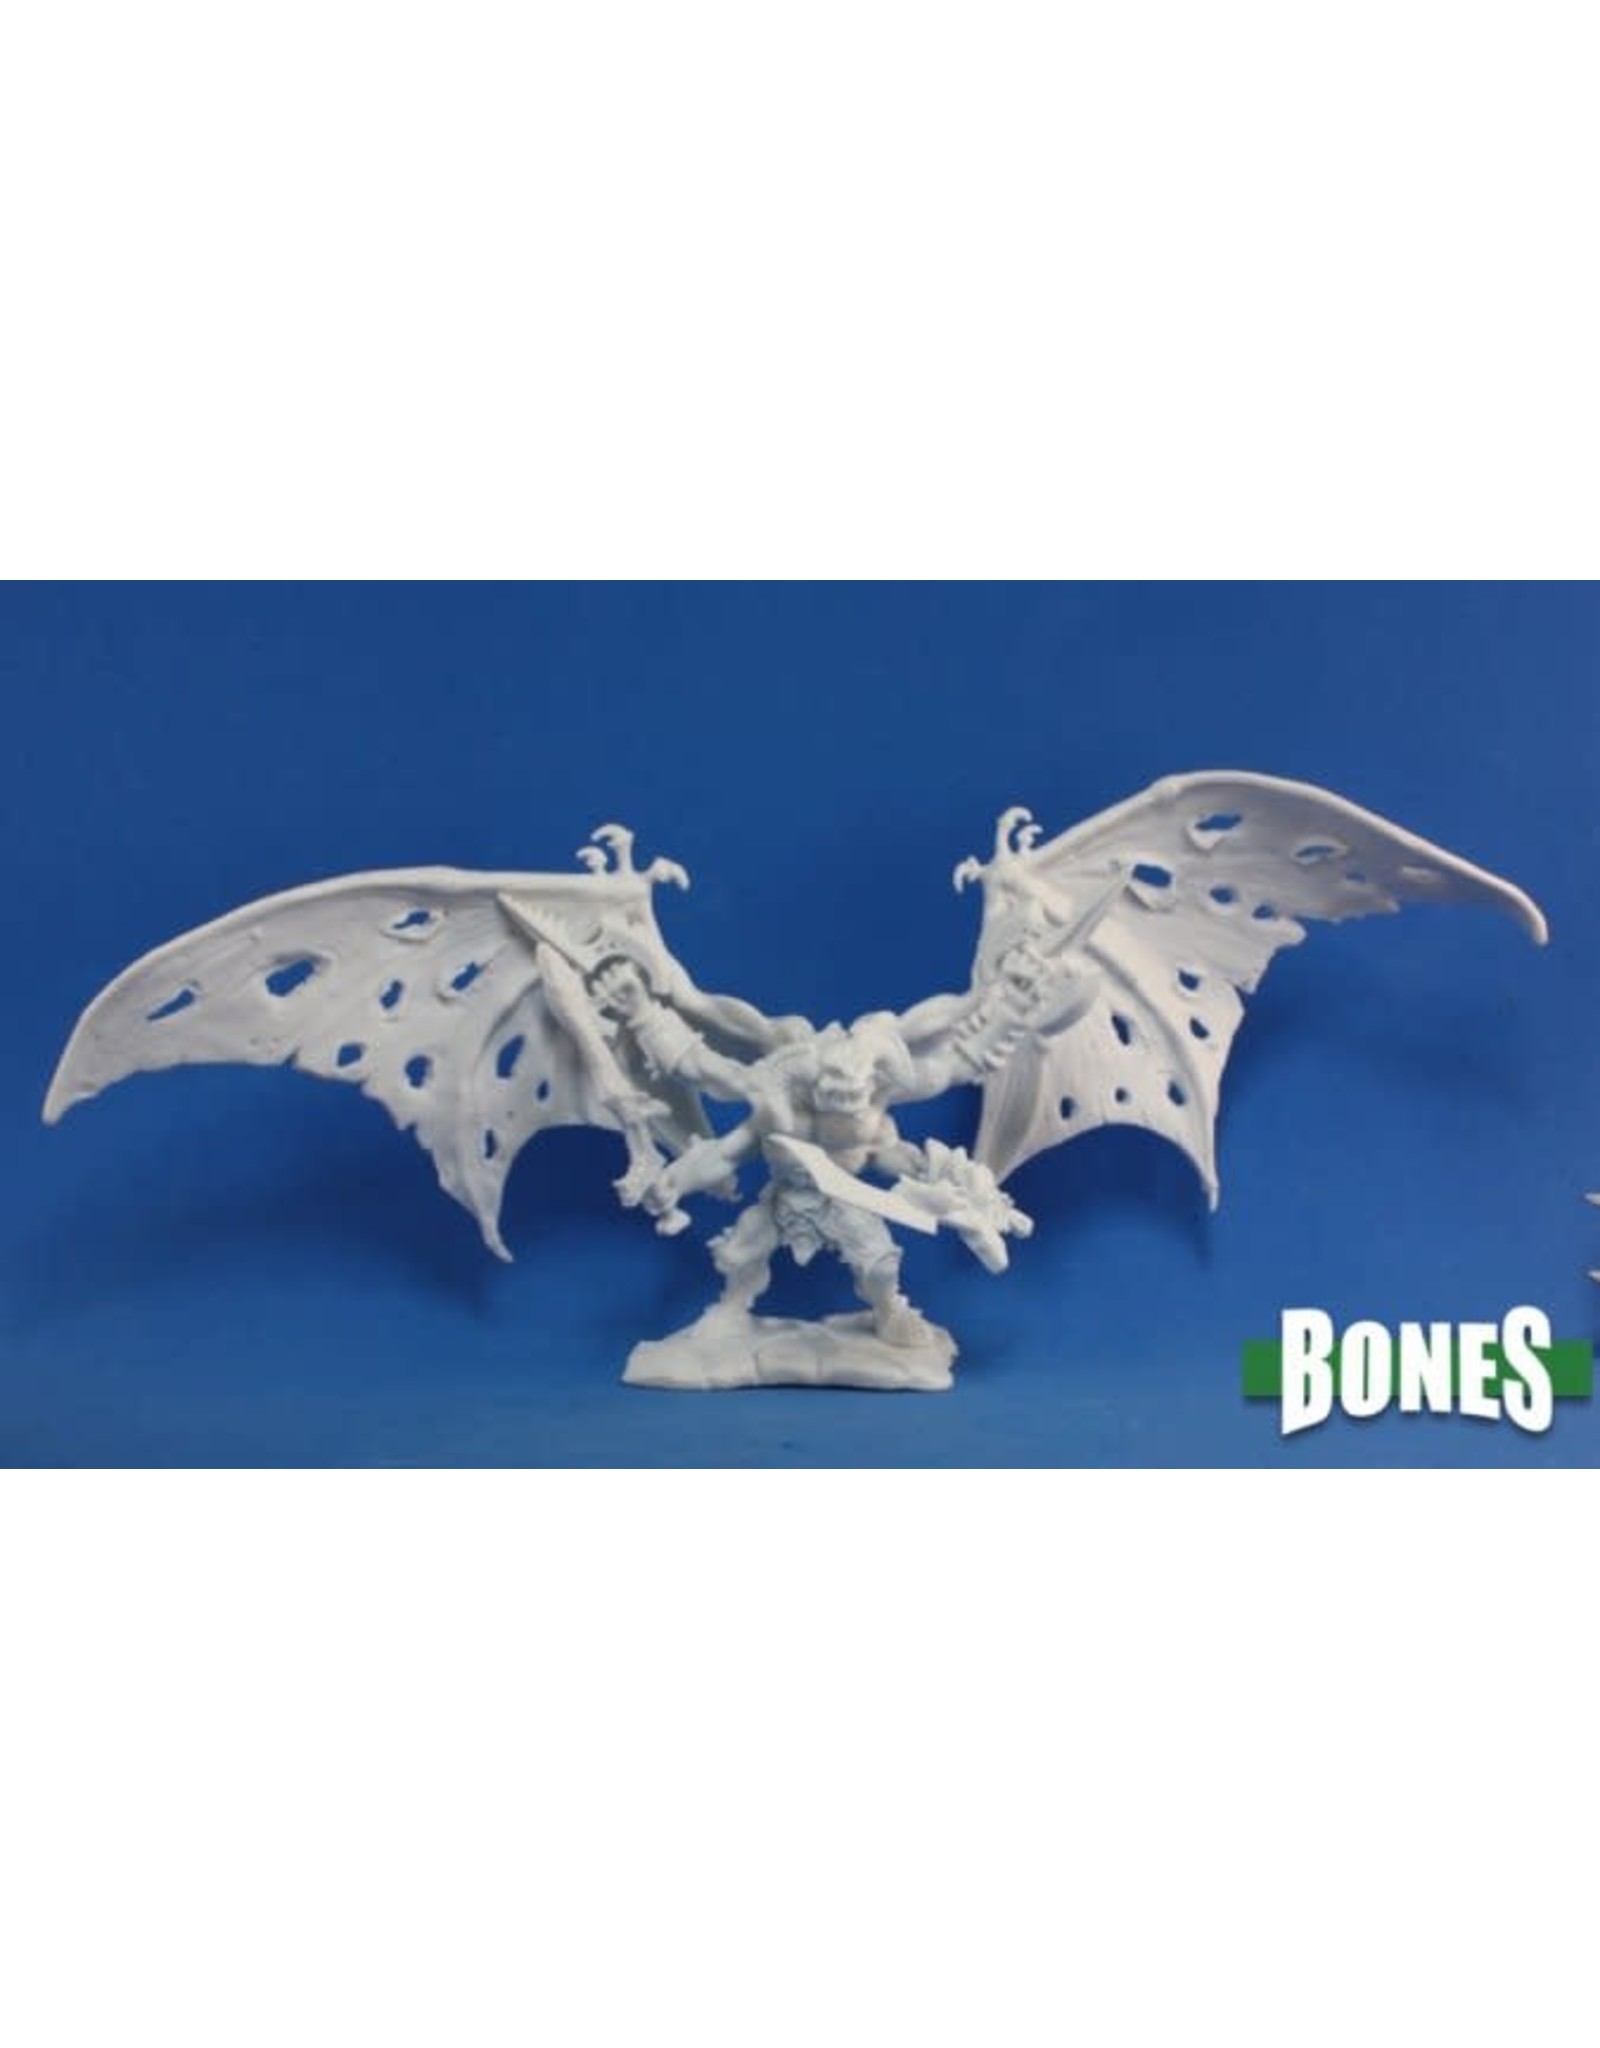 Reaper Miniatures Bones: Rauthuros, Demon